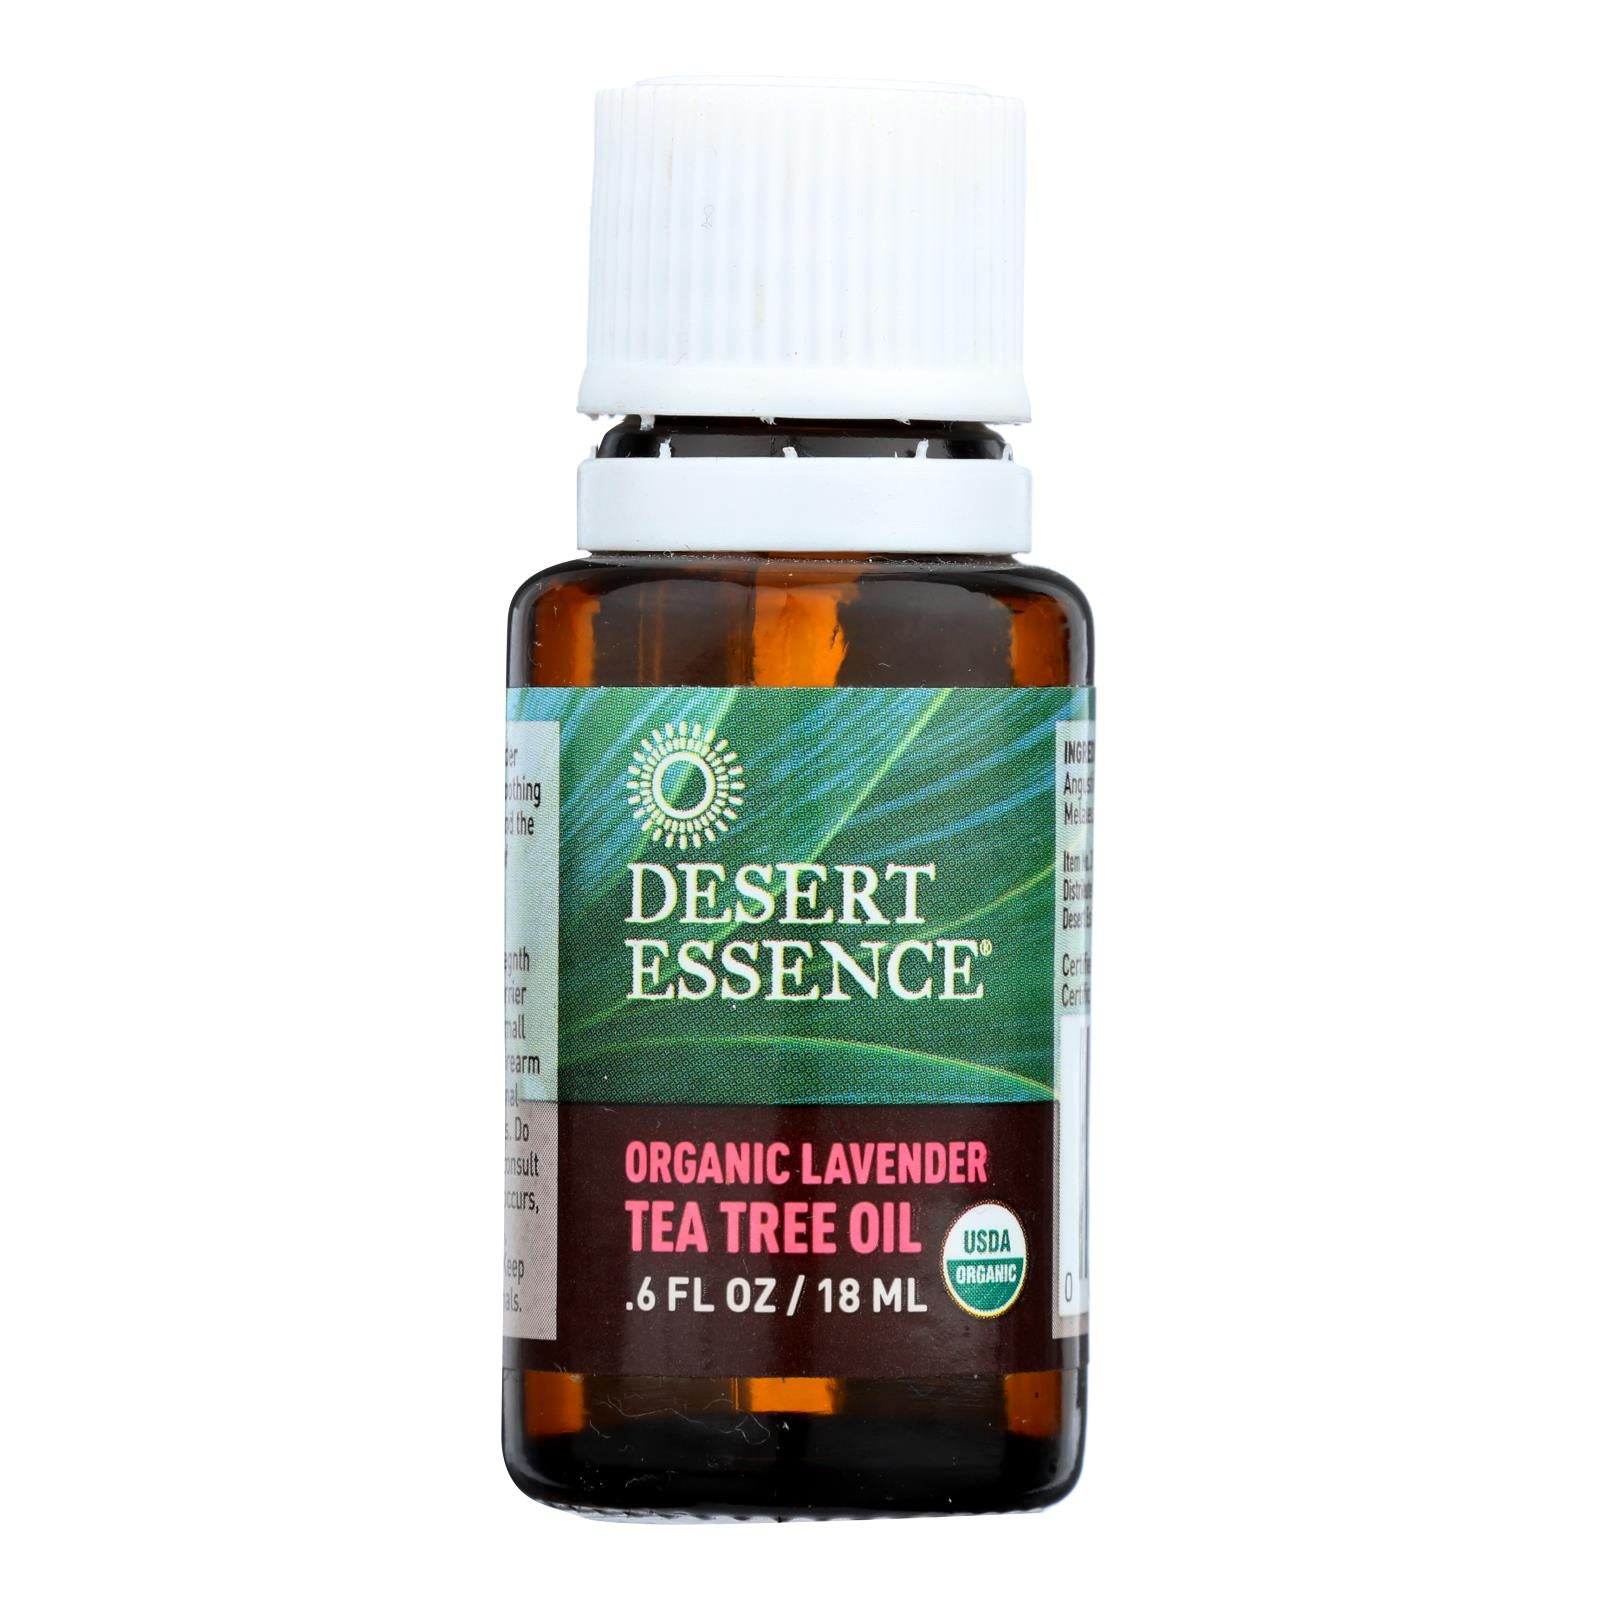 Desert Essence - Tea Tree Oil Lavender - 1 Each -.5 Fz